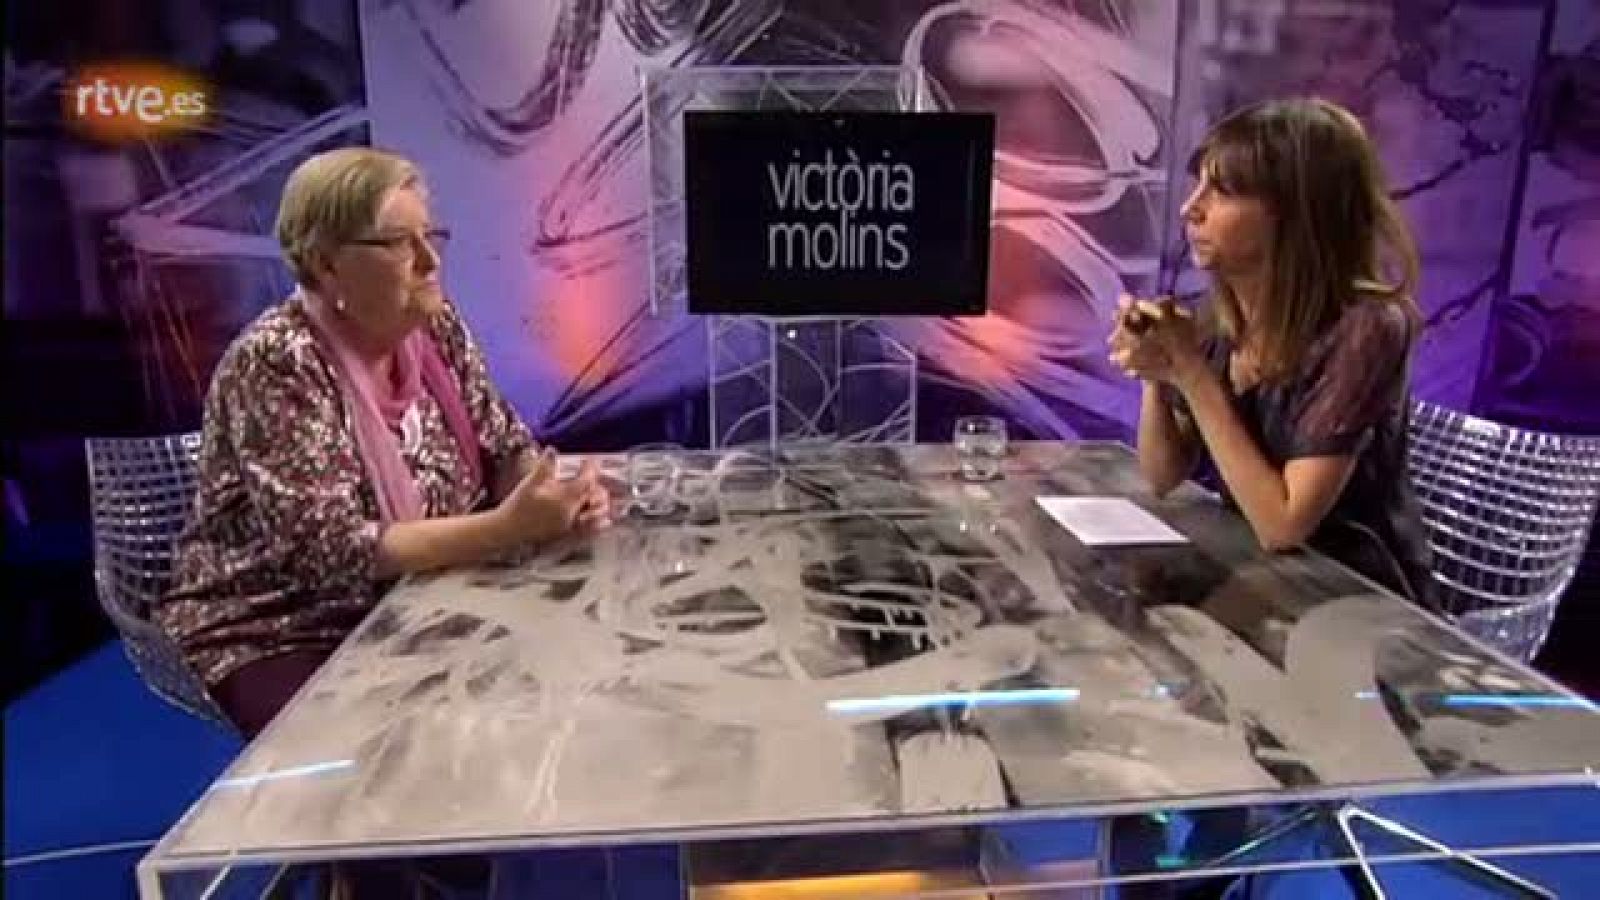 Gent de paraula - Maria Victòria Molins: "Si el celibat és una renúncia, no té sentit"